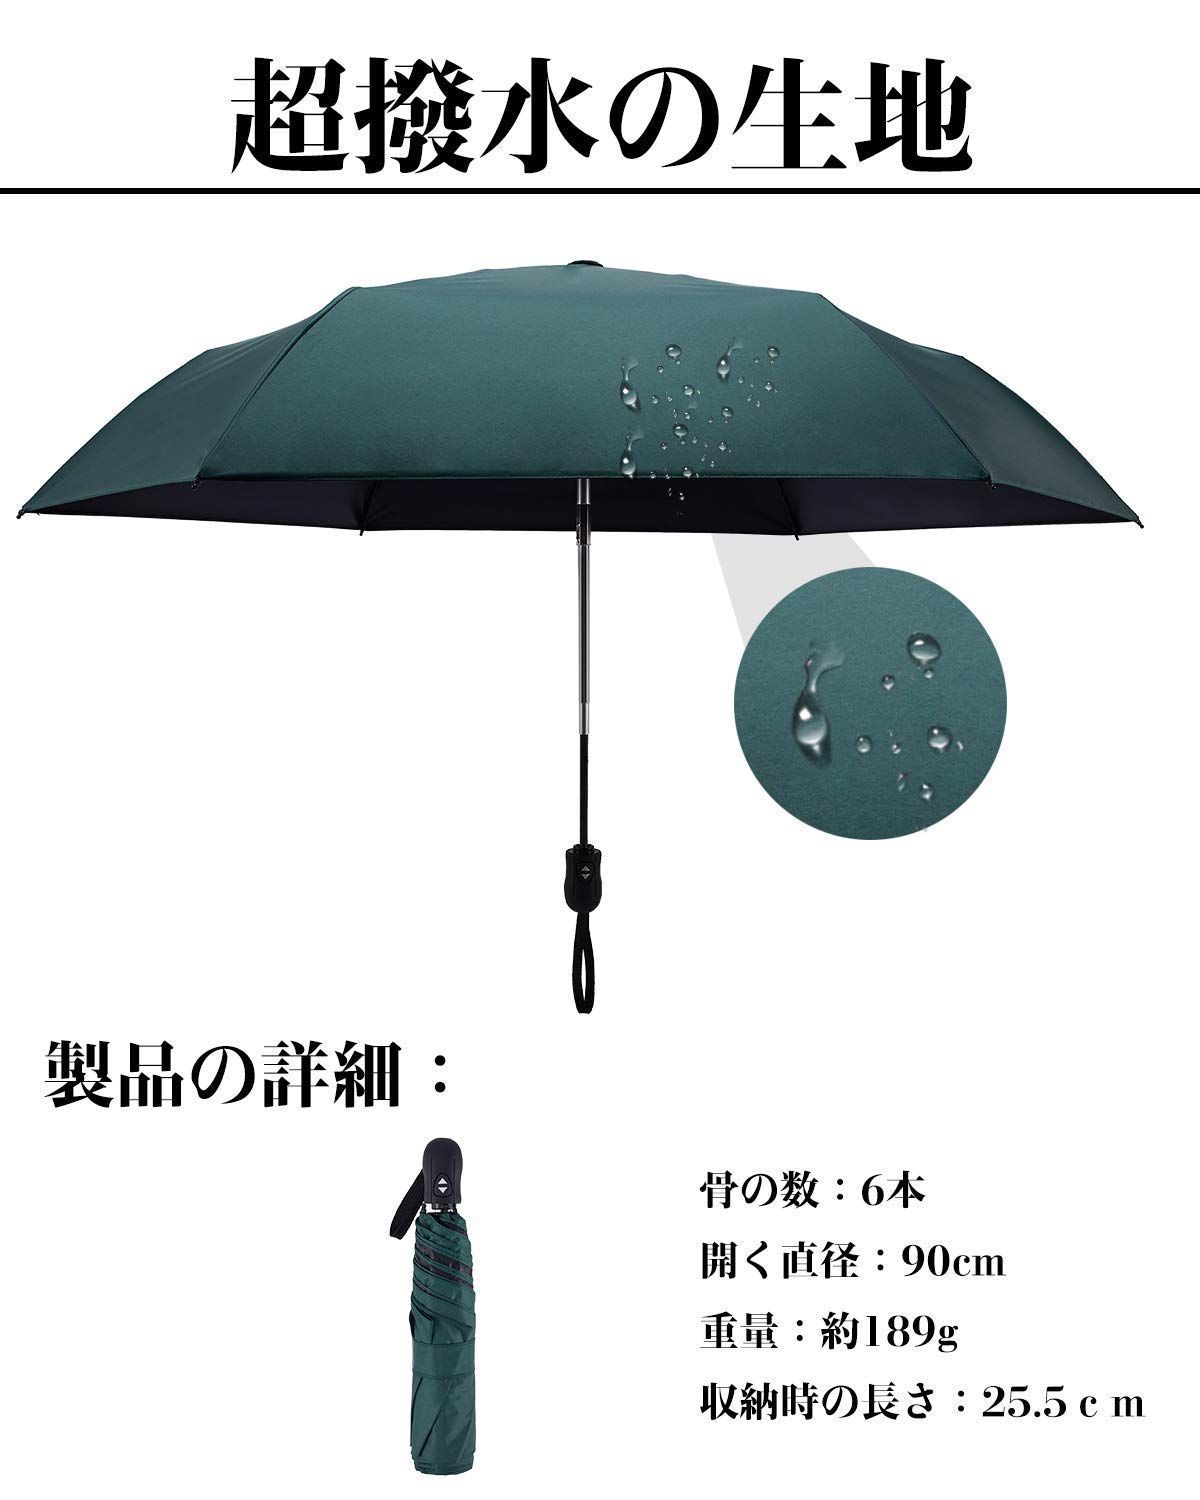 【色: ピンク】日傘 超軽量 189g-199g UVカット率 100% 完全遮